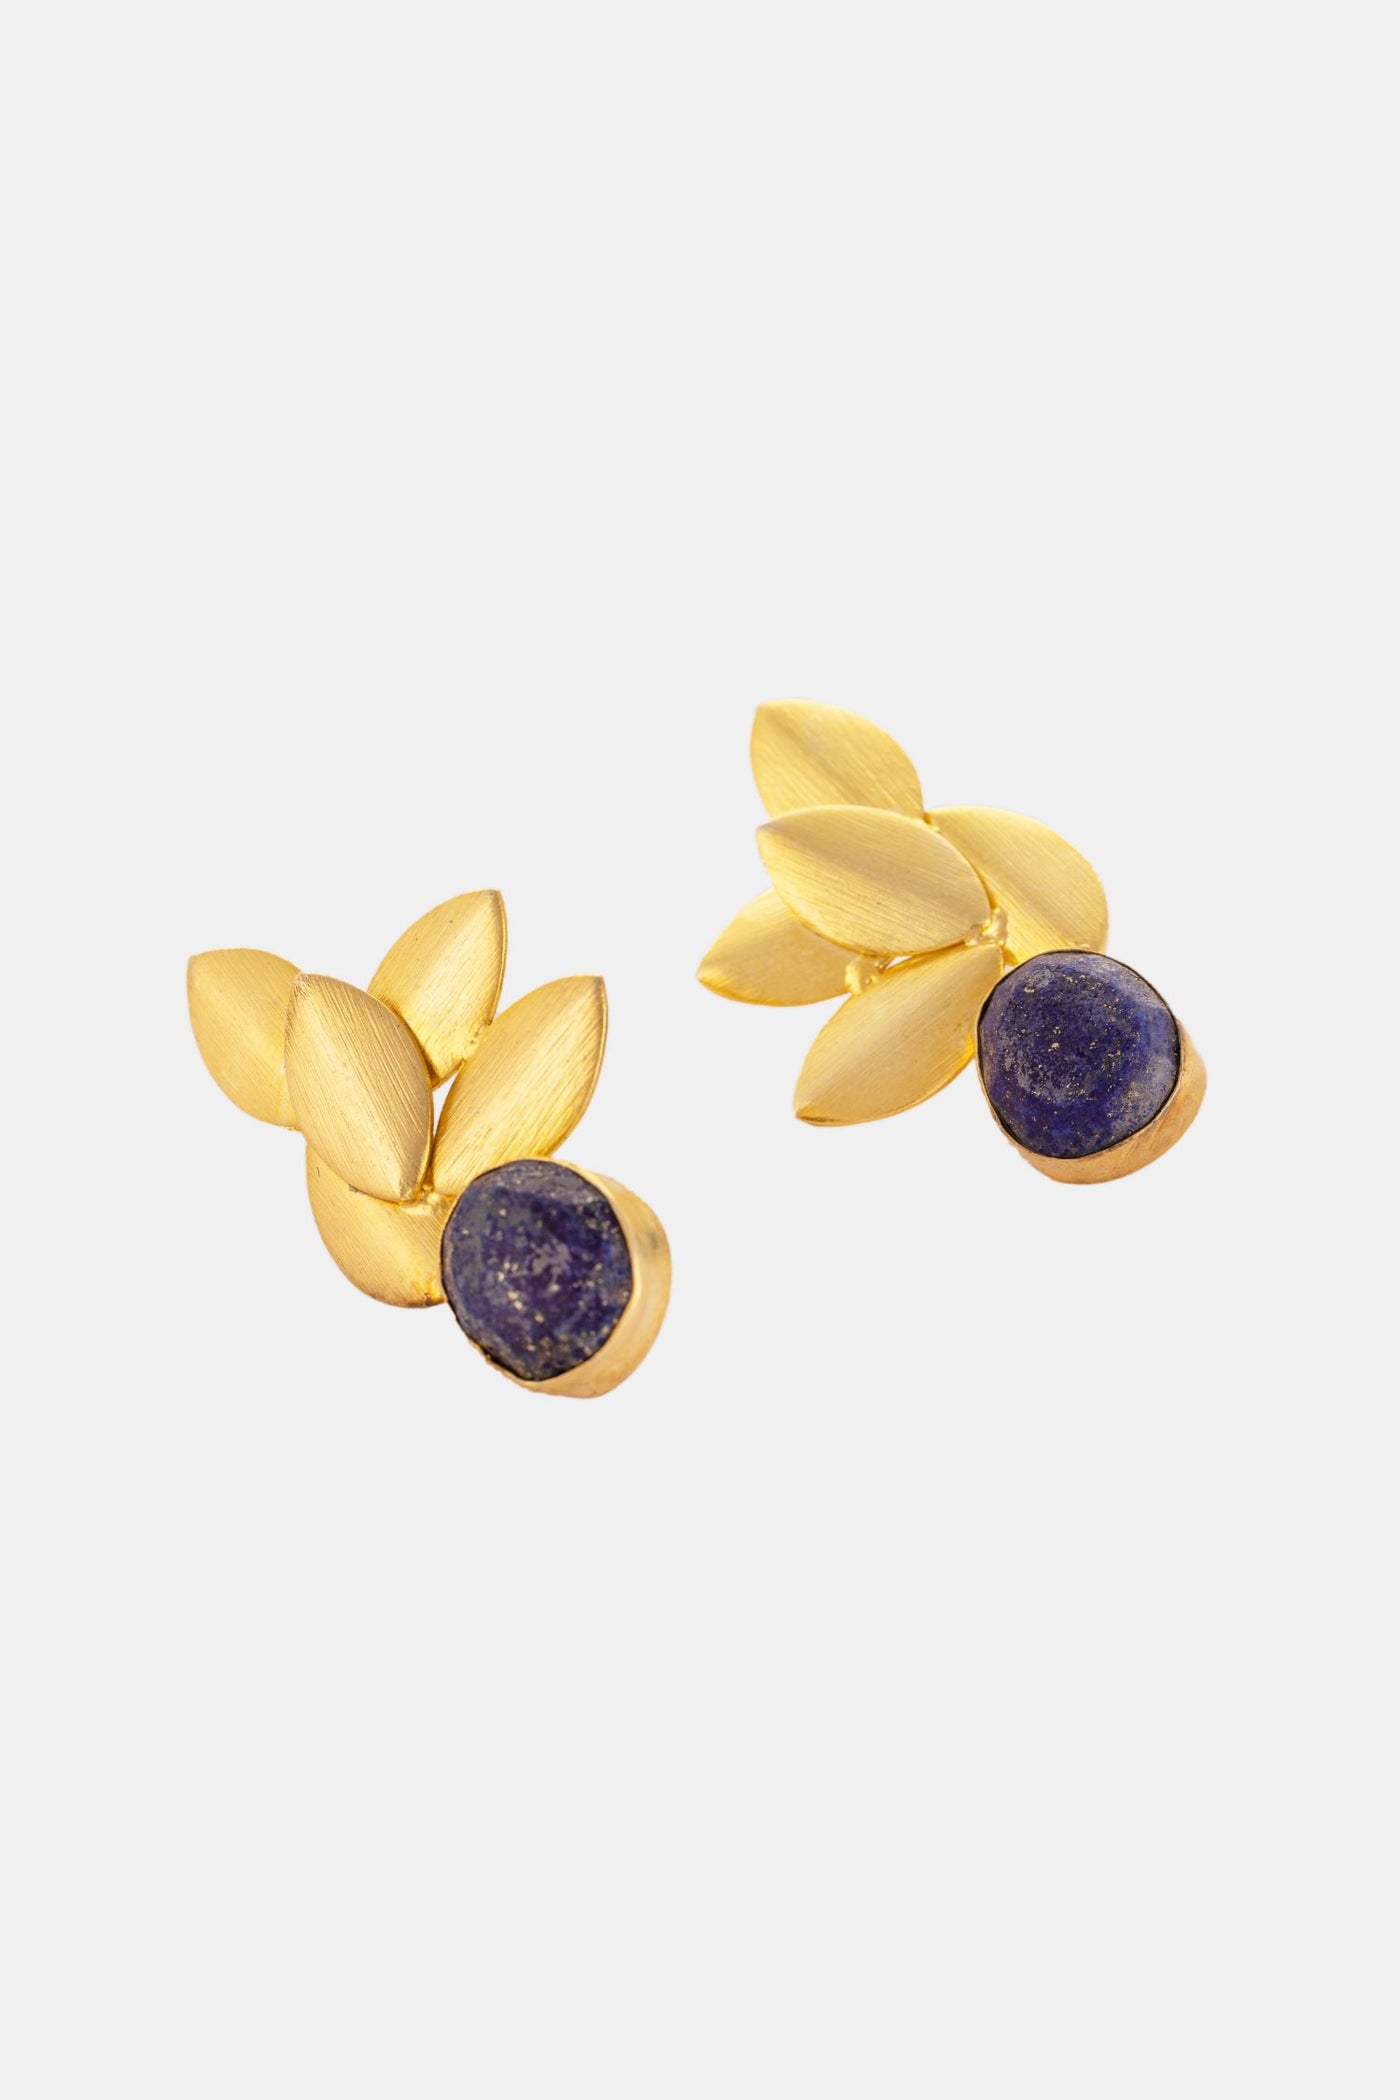 Exotic Blueberry Inspired Earring